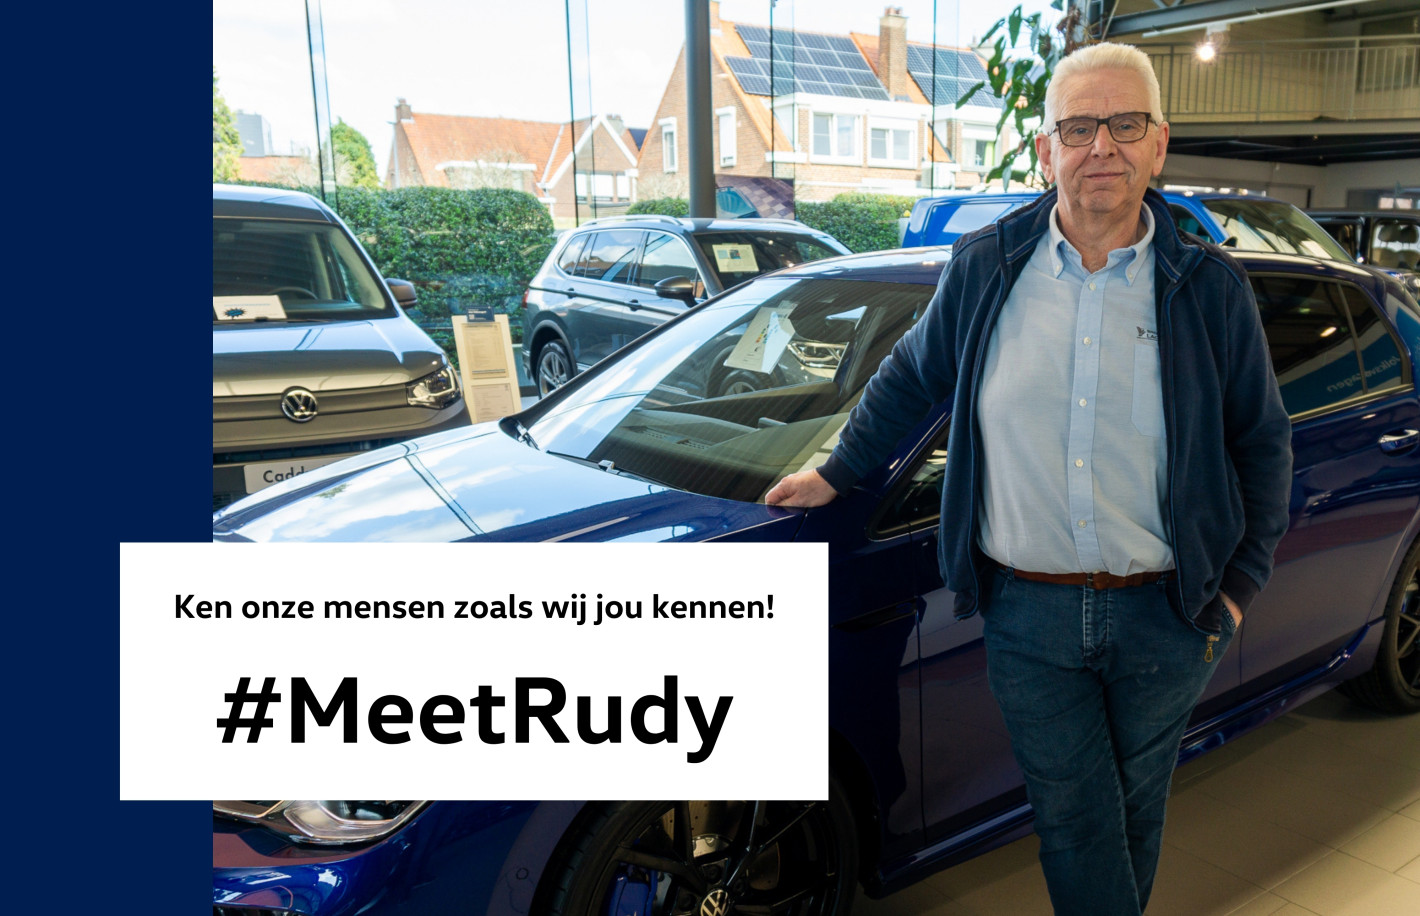 Meet Rudy